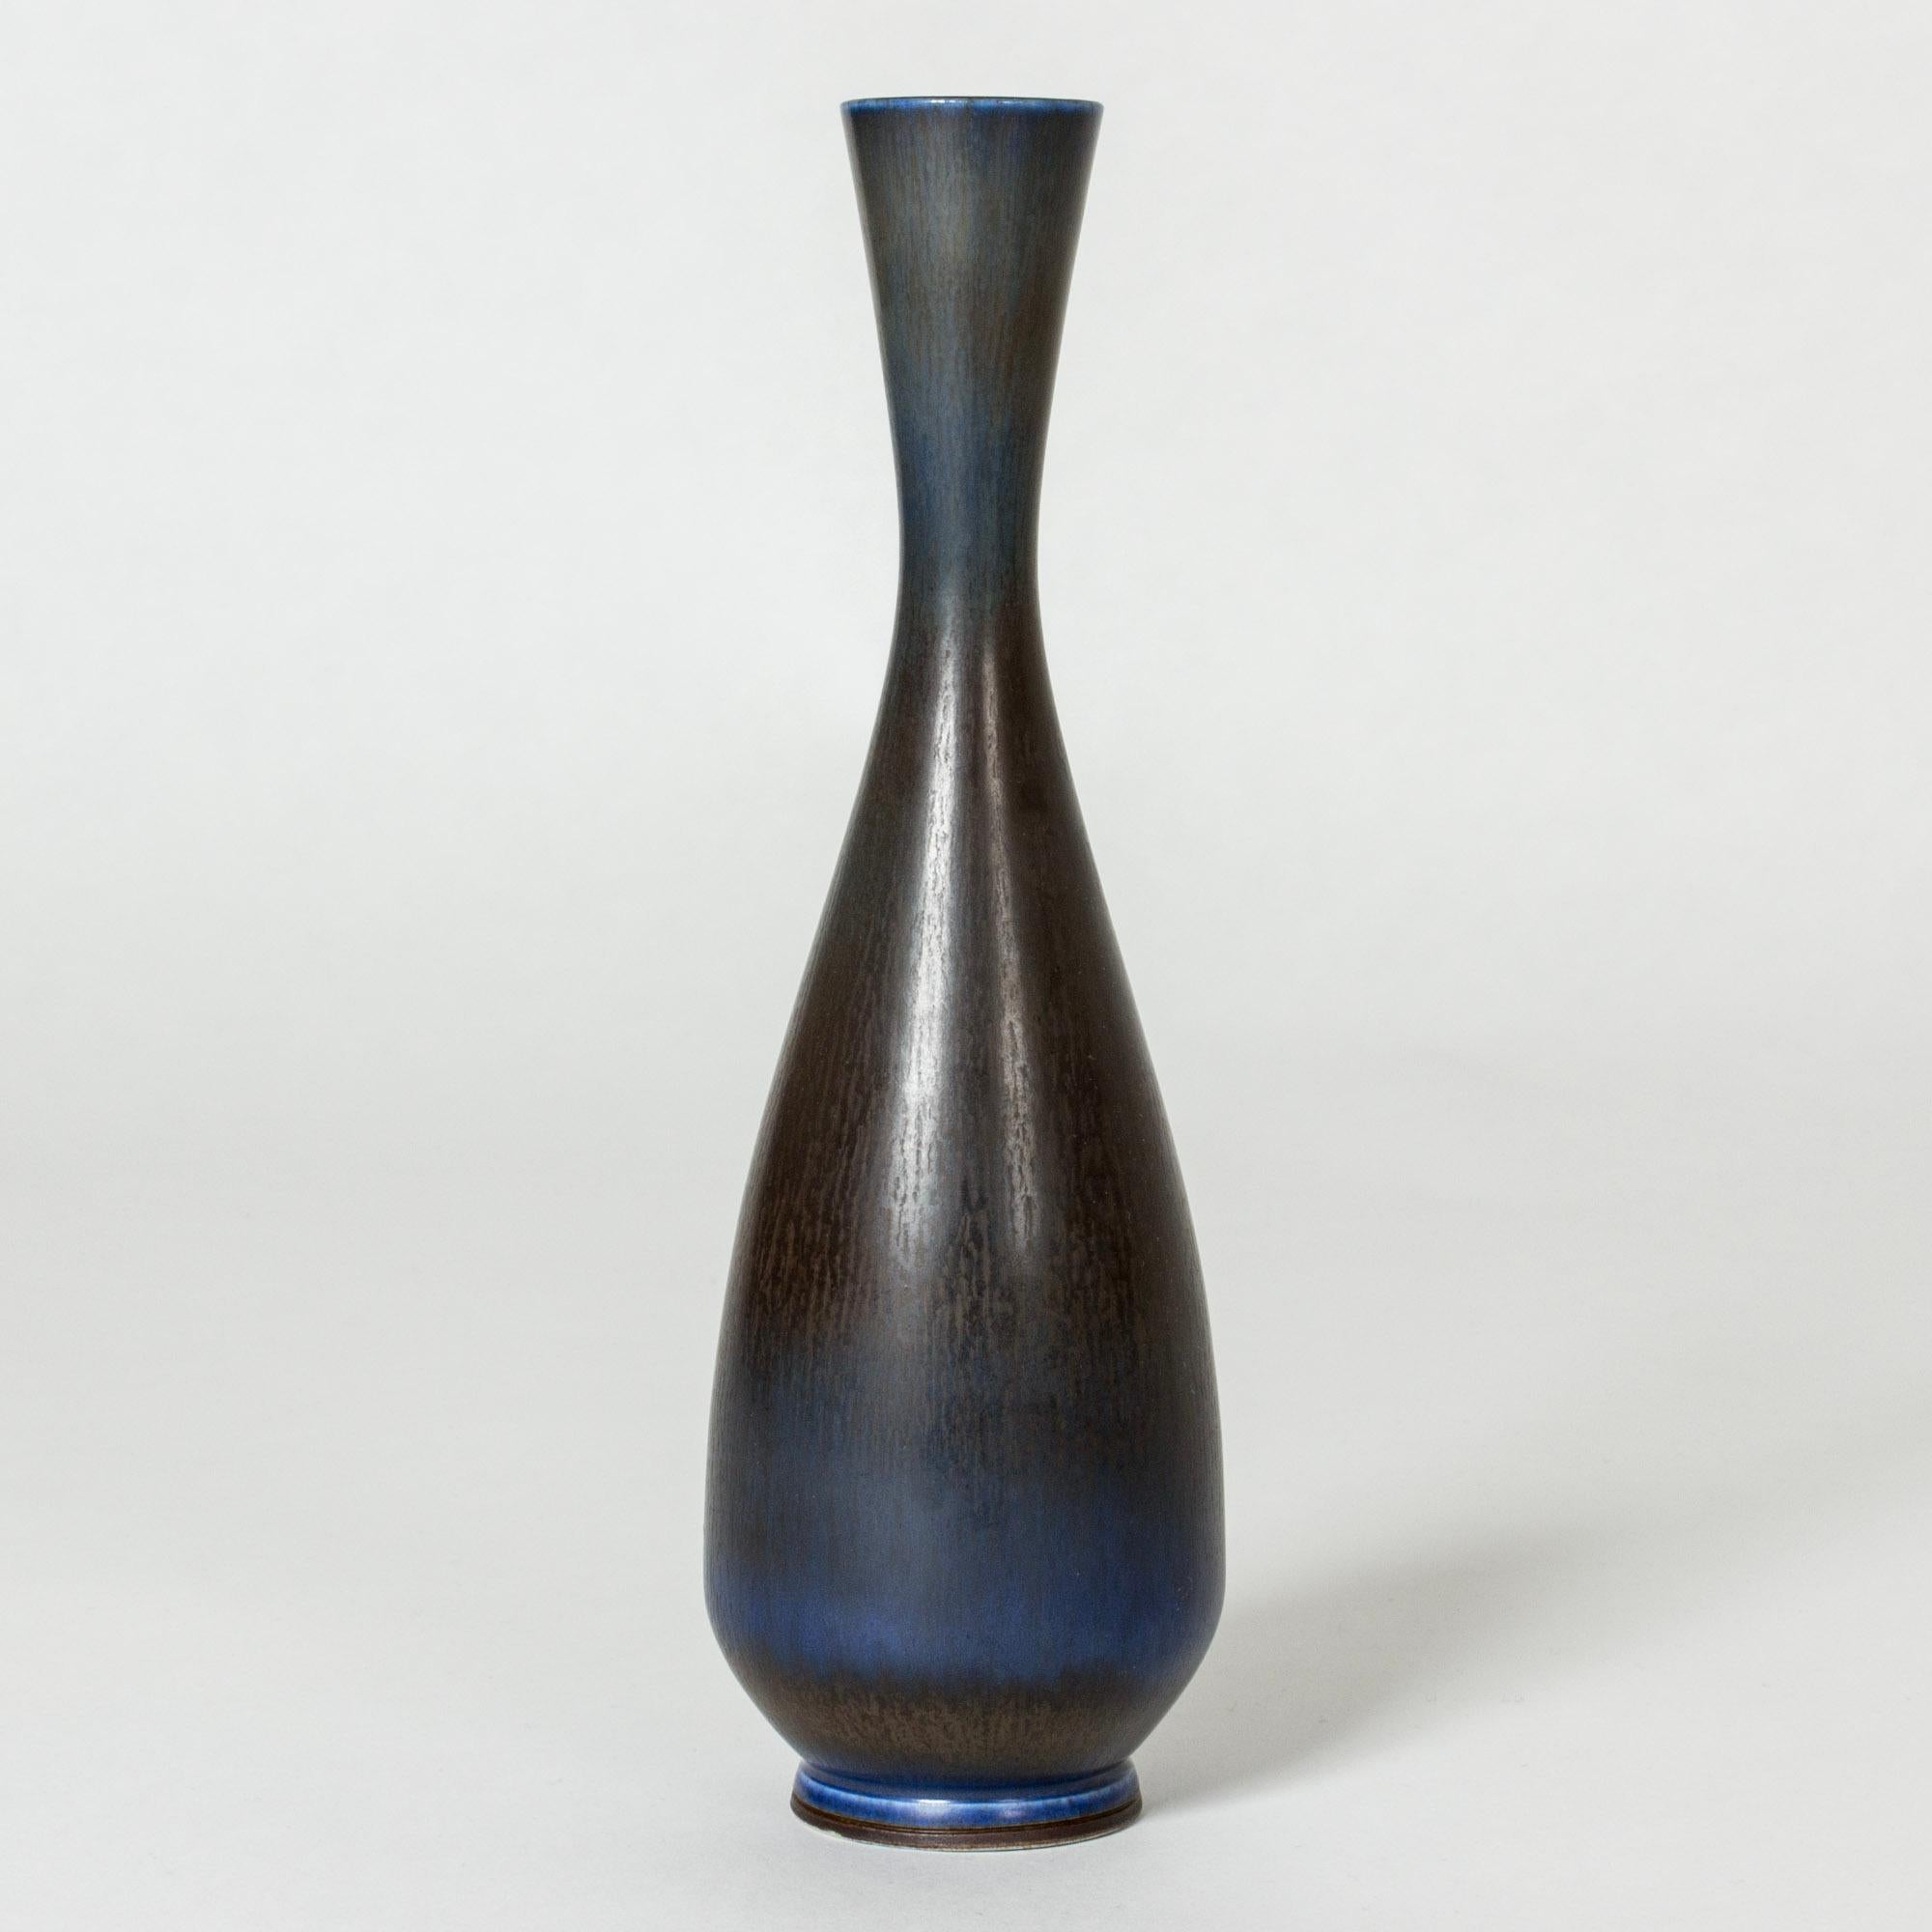 Vase en grès de Berndt Friberg dans une forme lisse avec une certaine angularité. Glaçure vibrante de fourrure de lièvre bleu foncé se fondant dans le brun foncé.

Berndt Friberg était un céramiste suédois, renommé pour ses vases en grès et ses